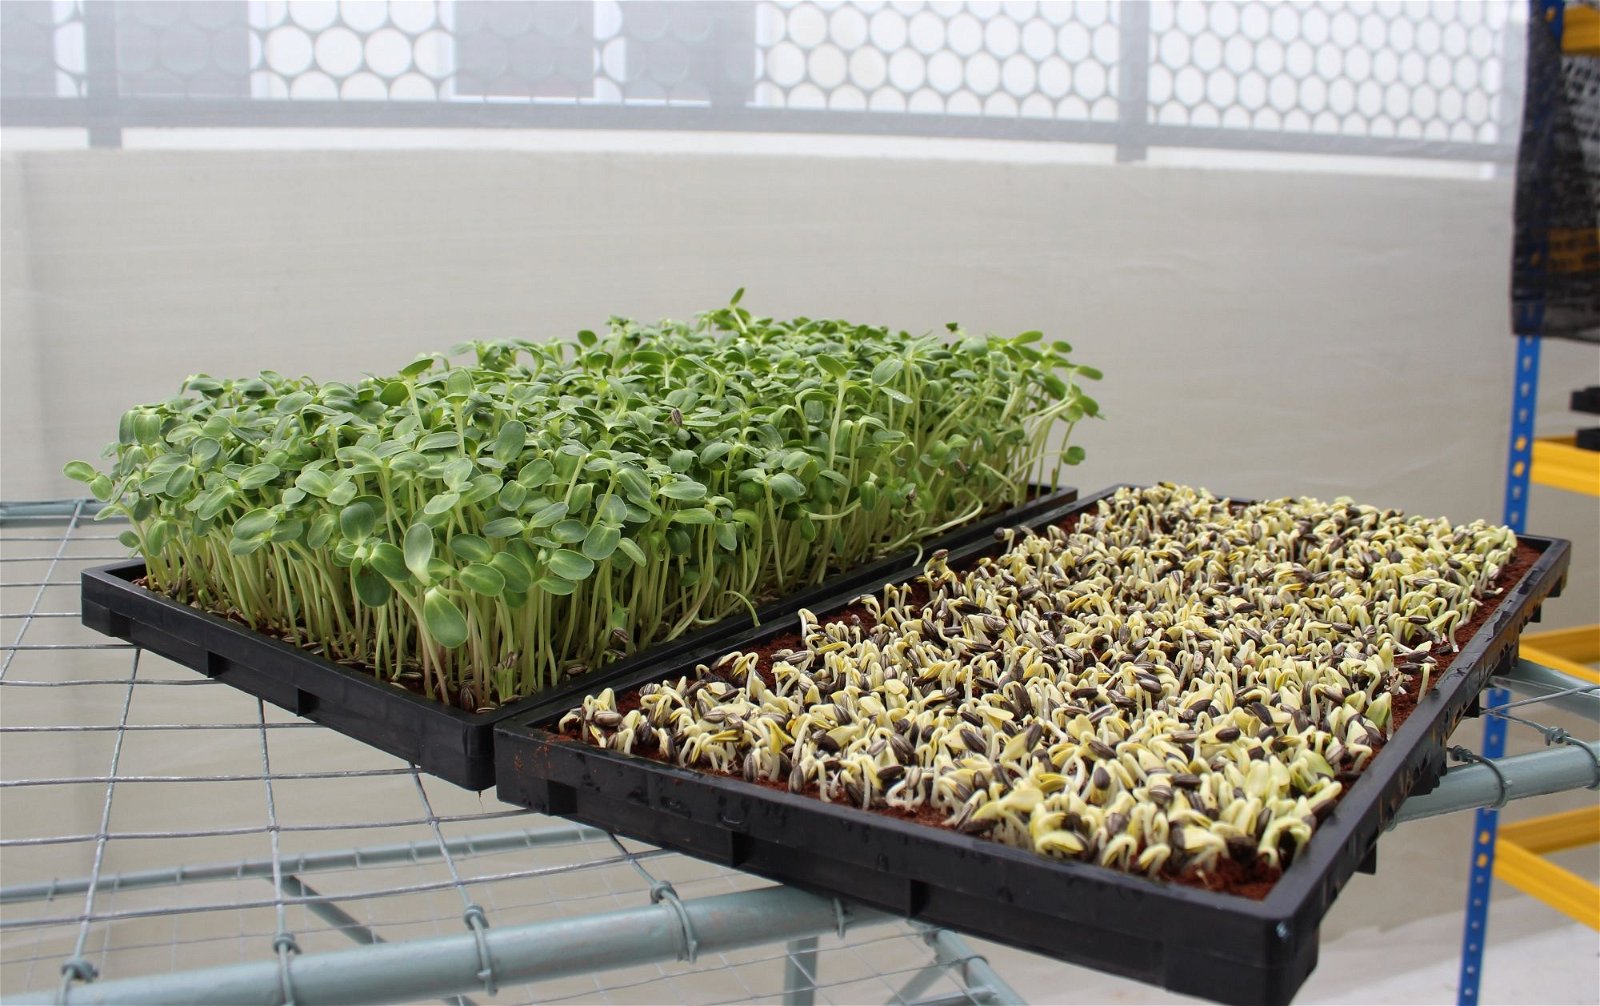 向日葵芽苗菜的种植期仅需短短7天，如图中右边托盘，为刚栽种3天的芽苗菜，左边则是栽种第7天，并可收割的芽苗菜。